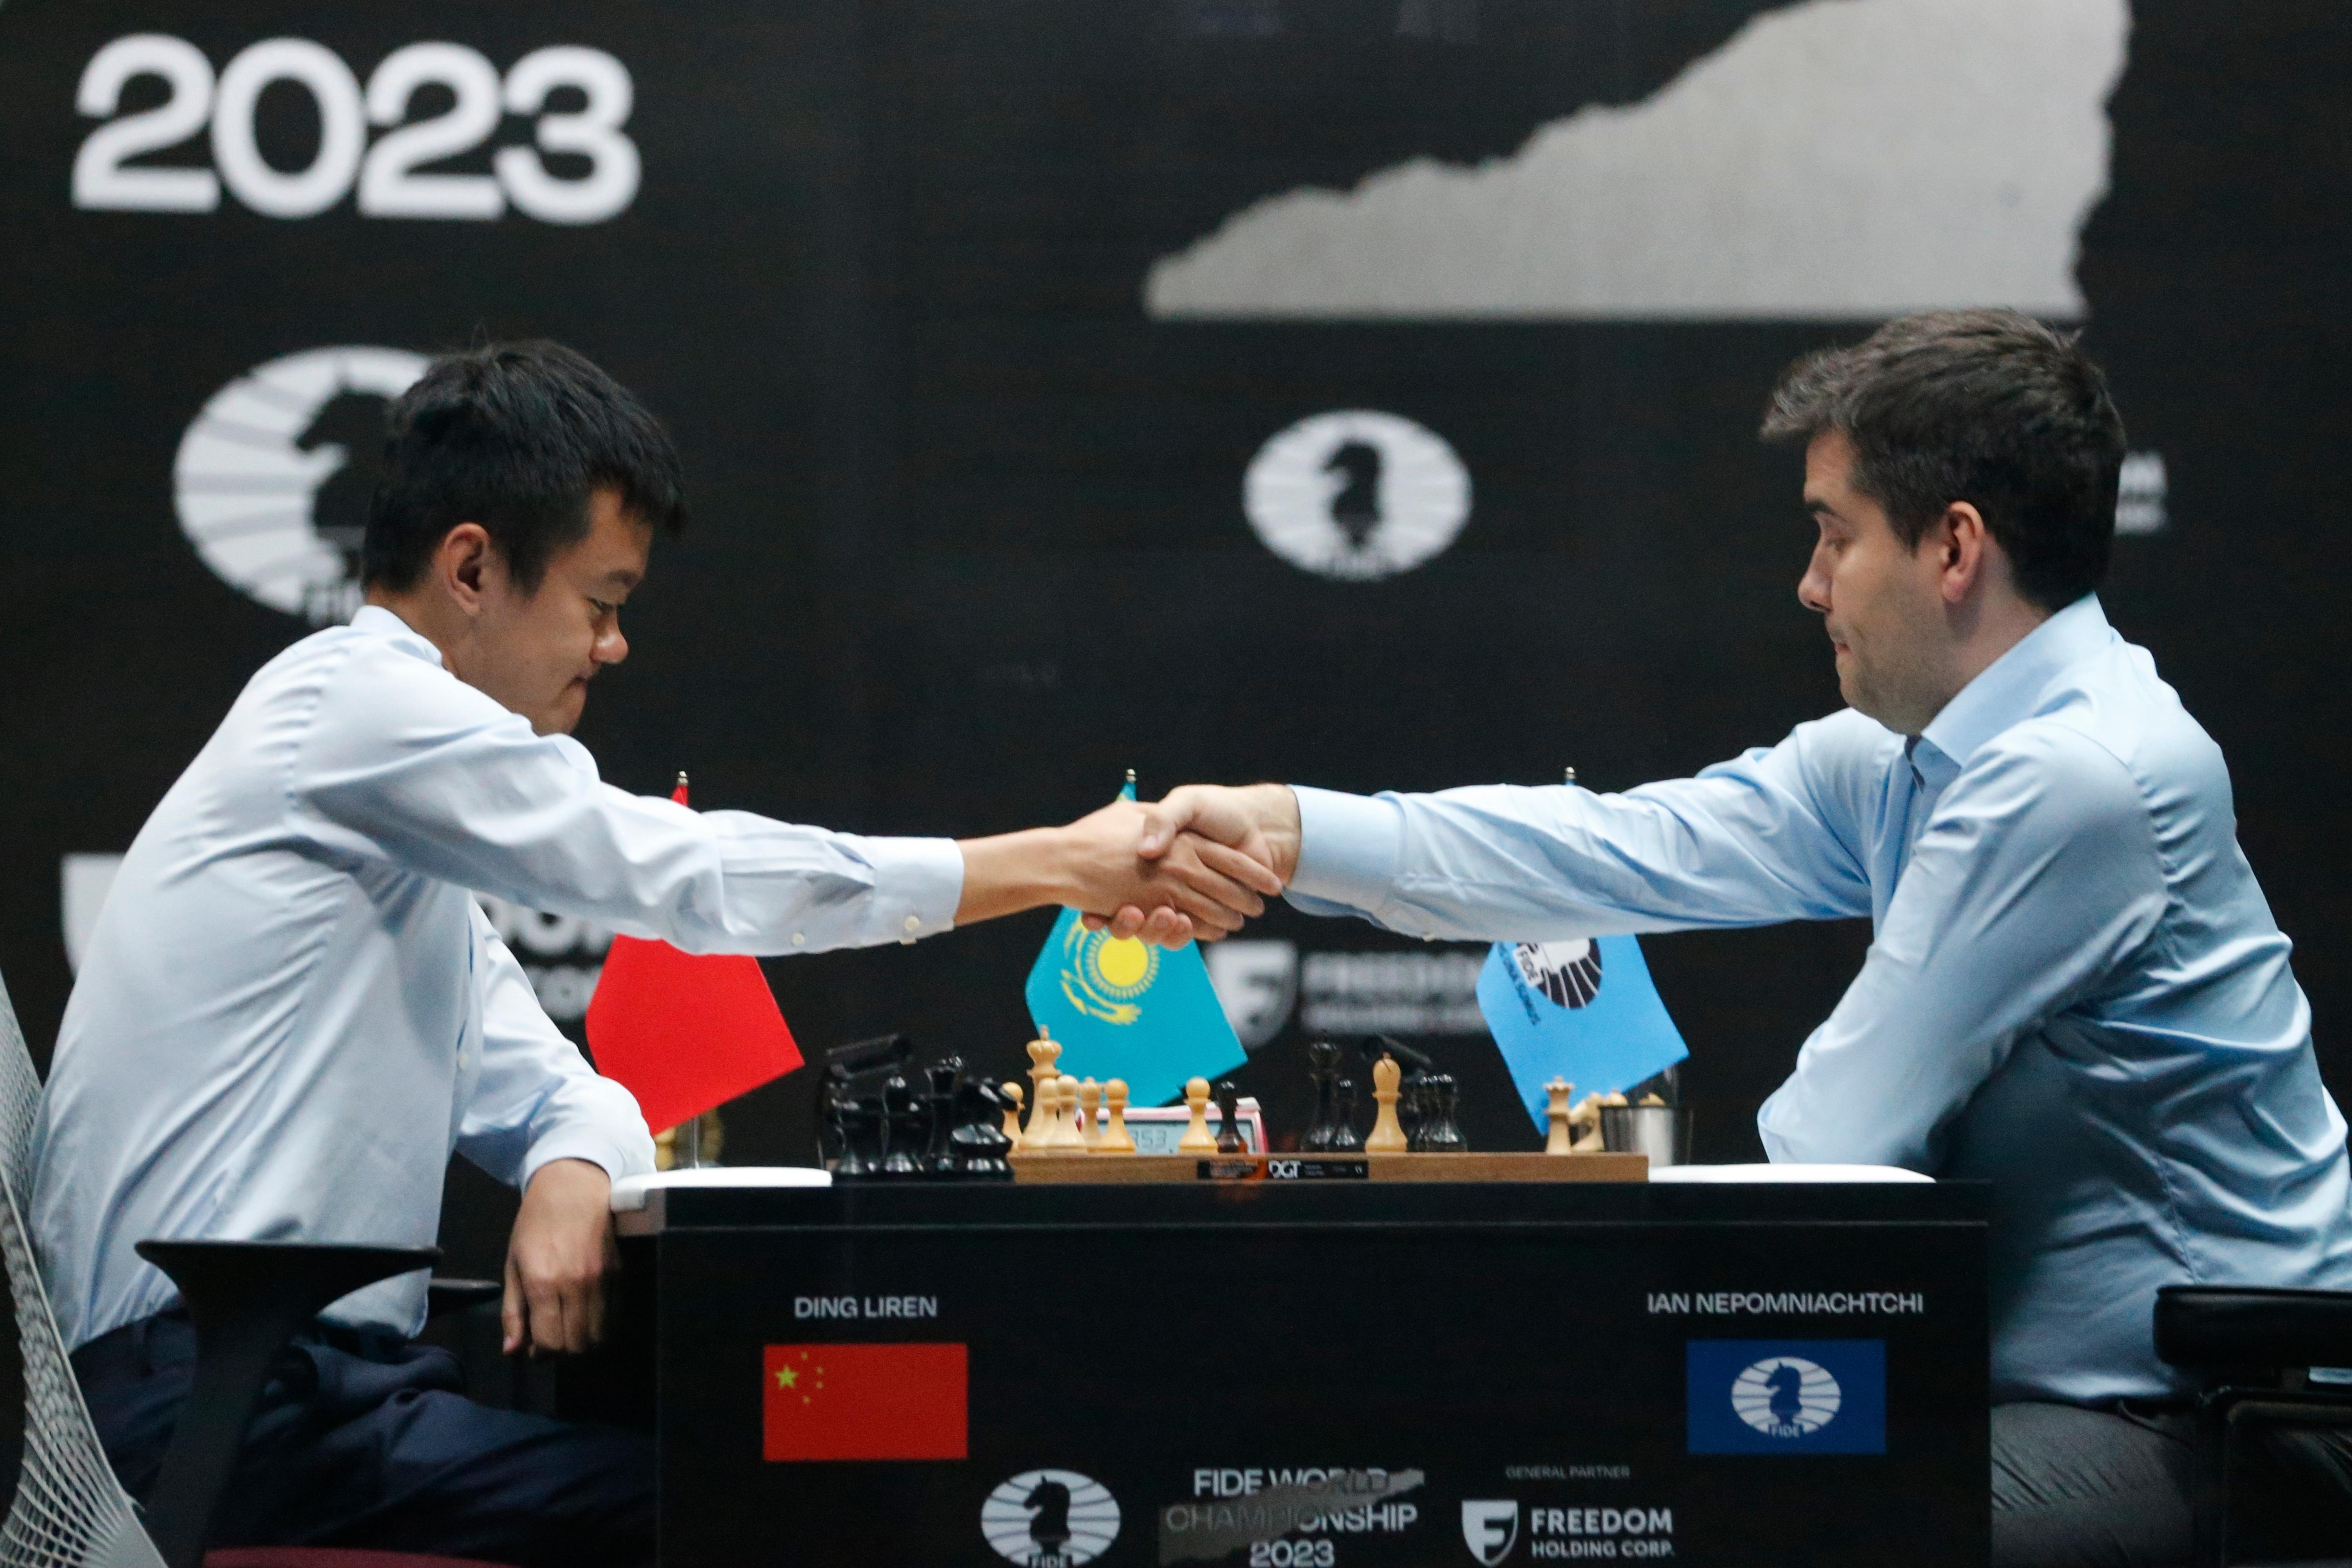 Ding Liren derrota Nepomniachtchti e é o primeiro chinês campeão mundial de  xadrez